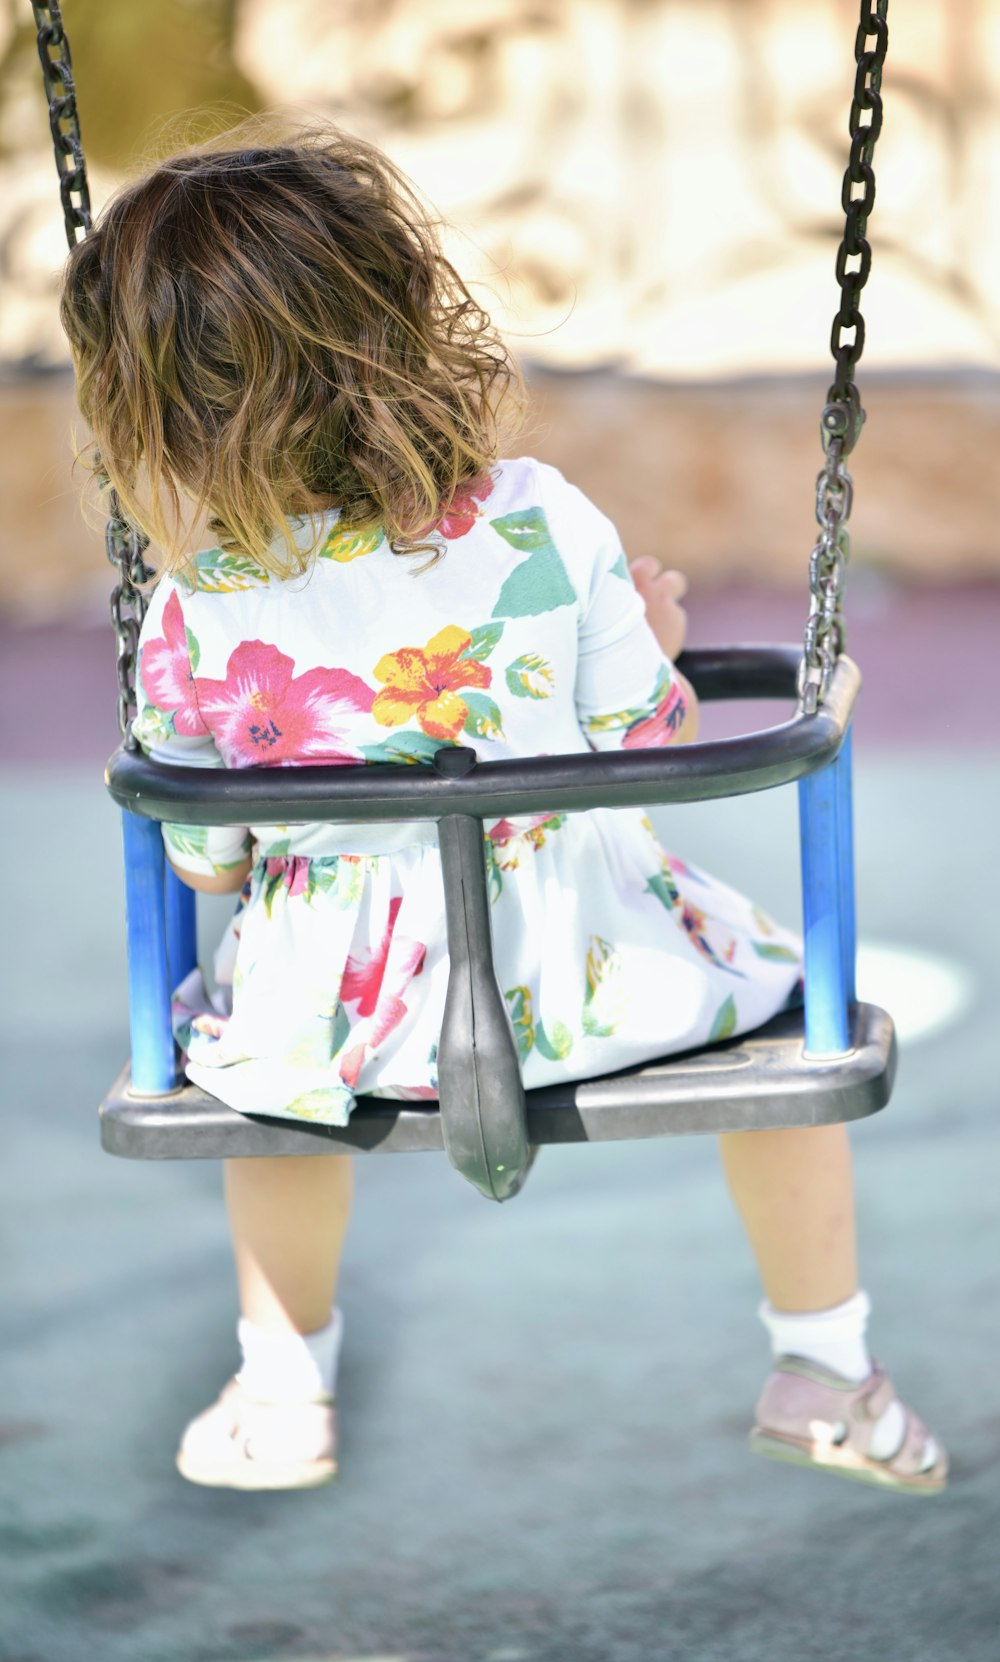 a little girl on a swing